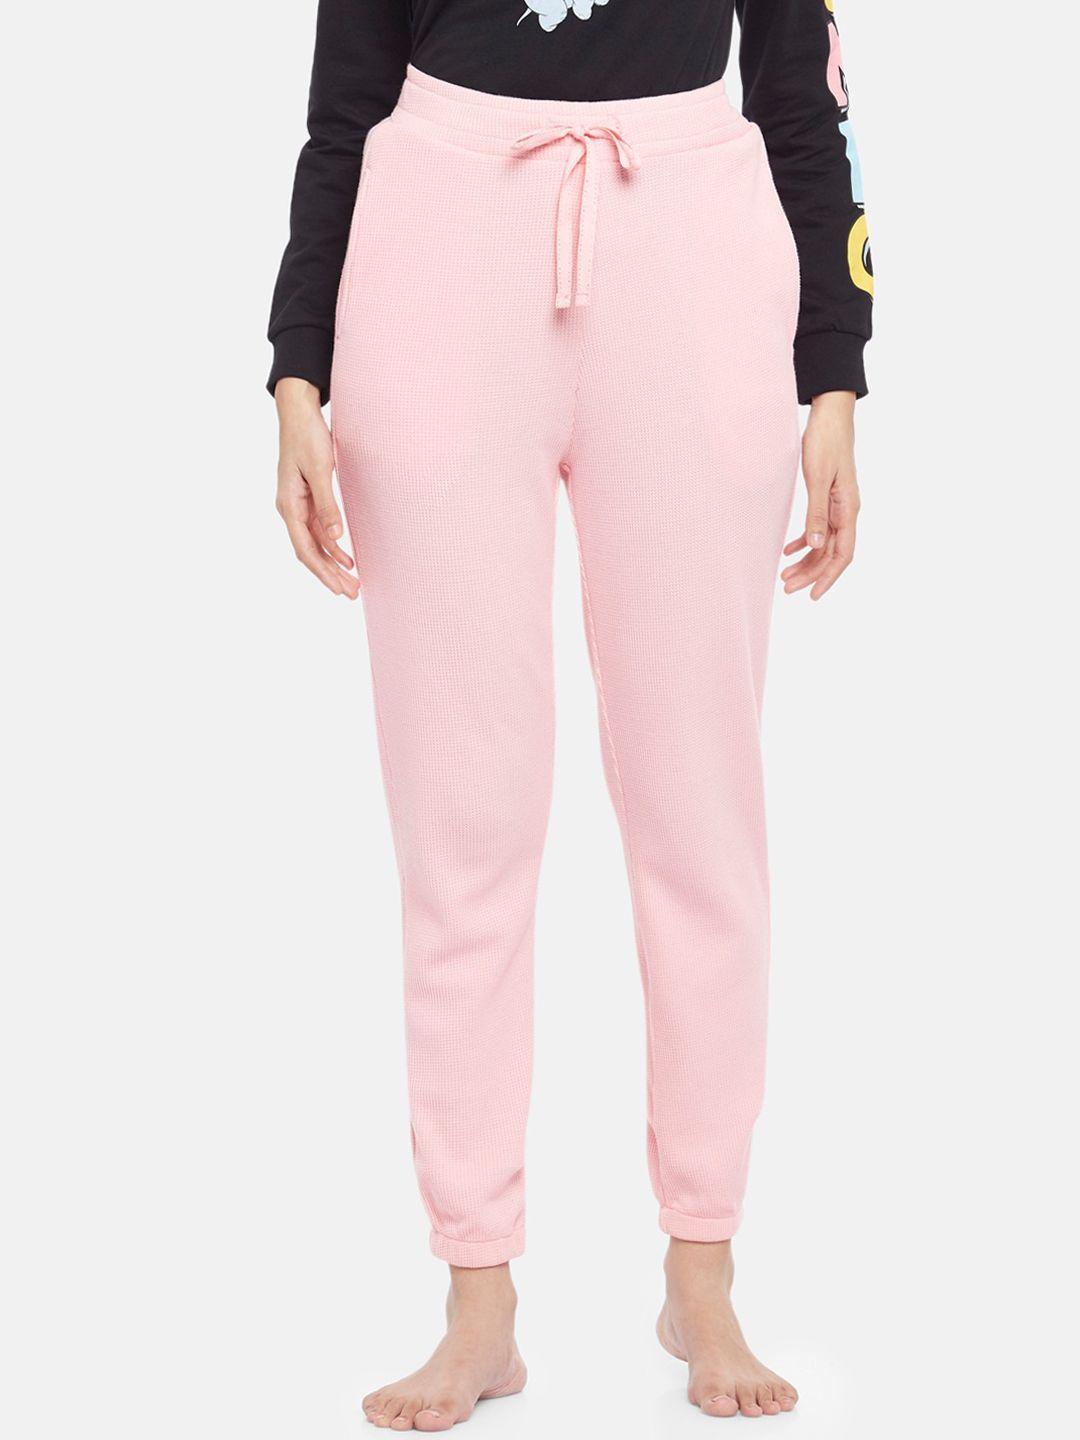 dreamz by pantaloons women pink lounge pants